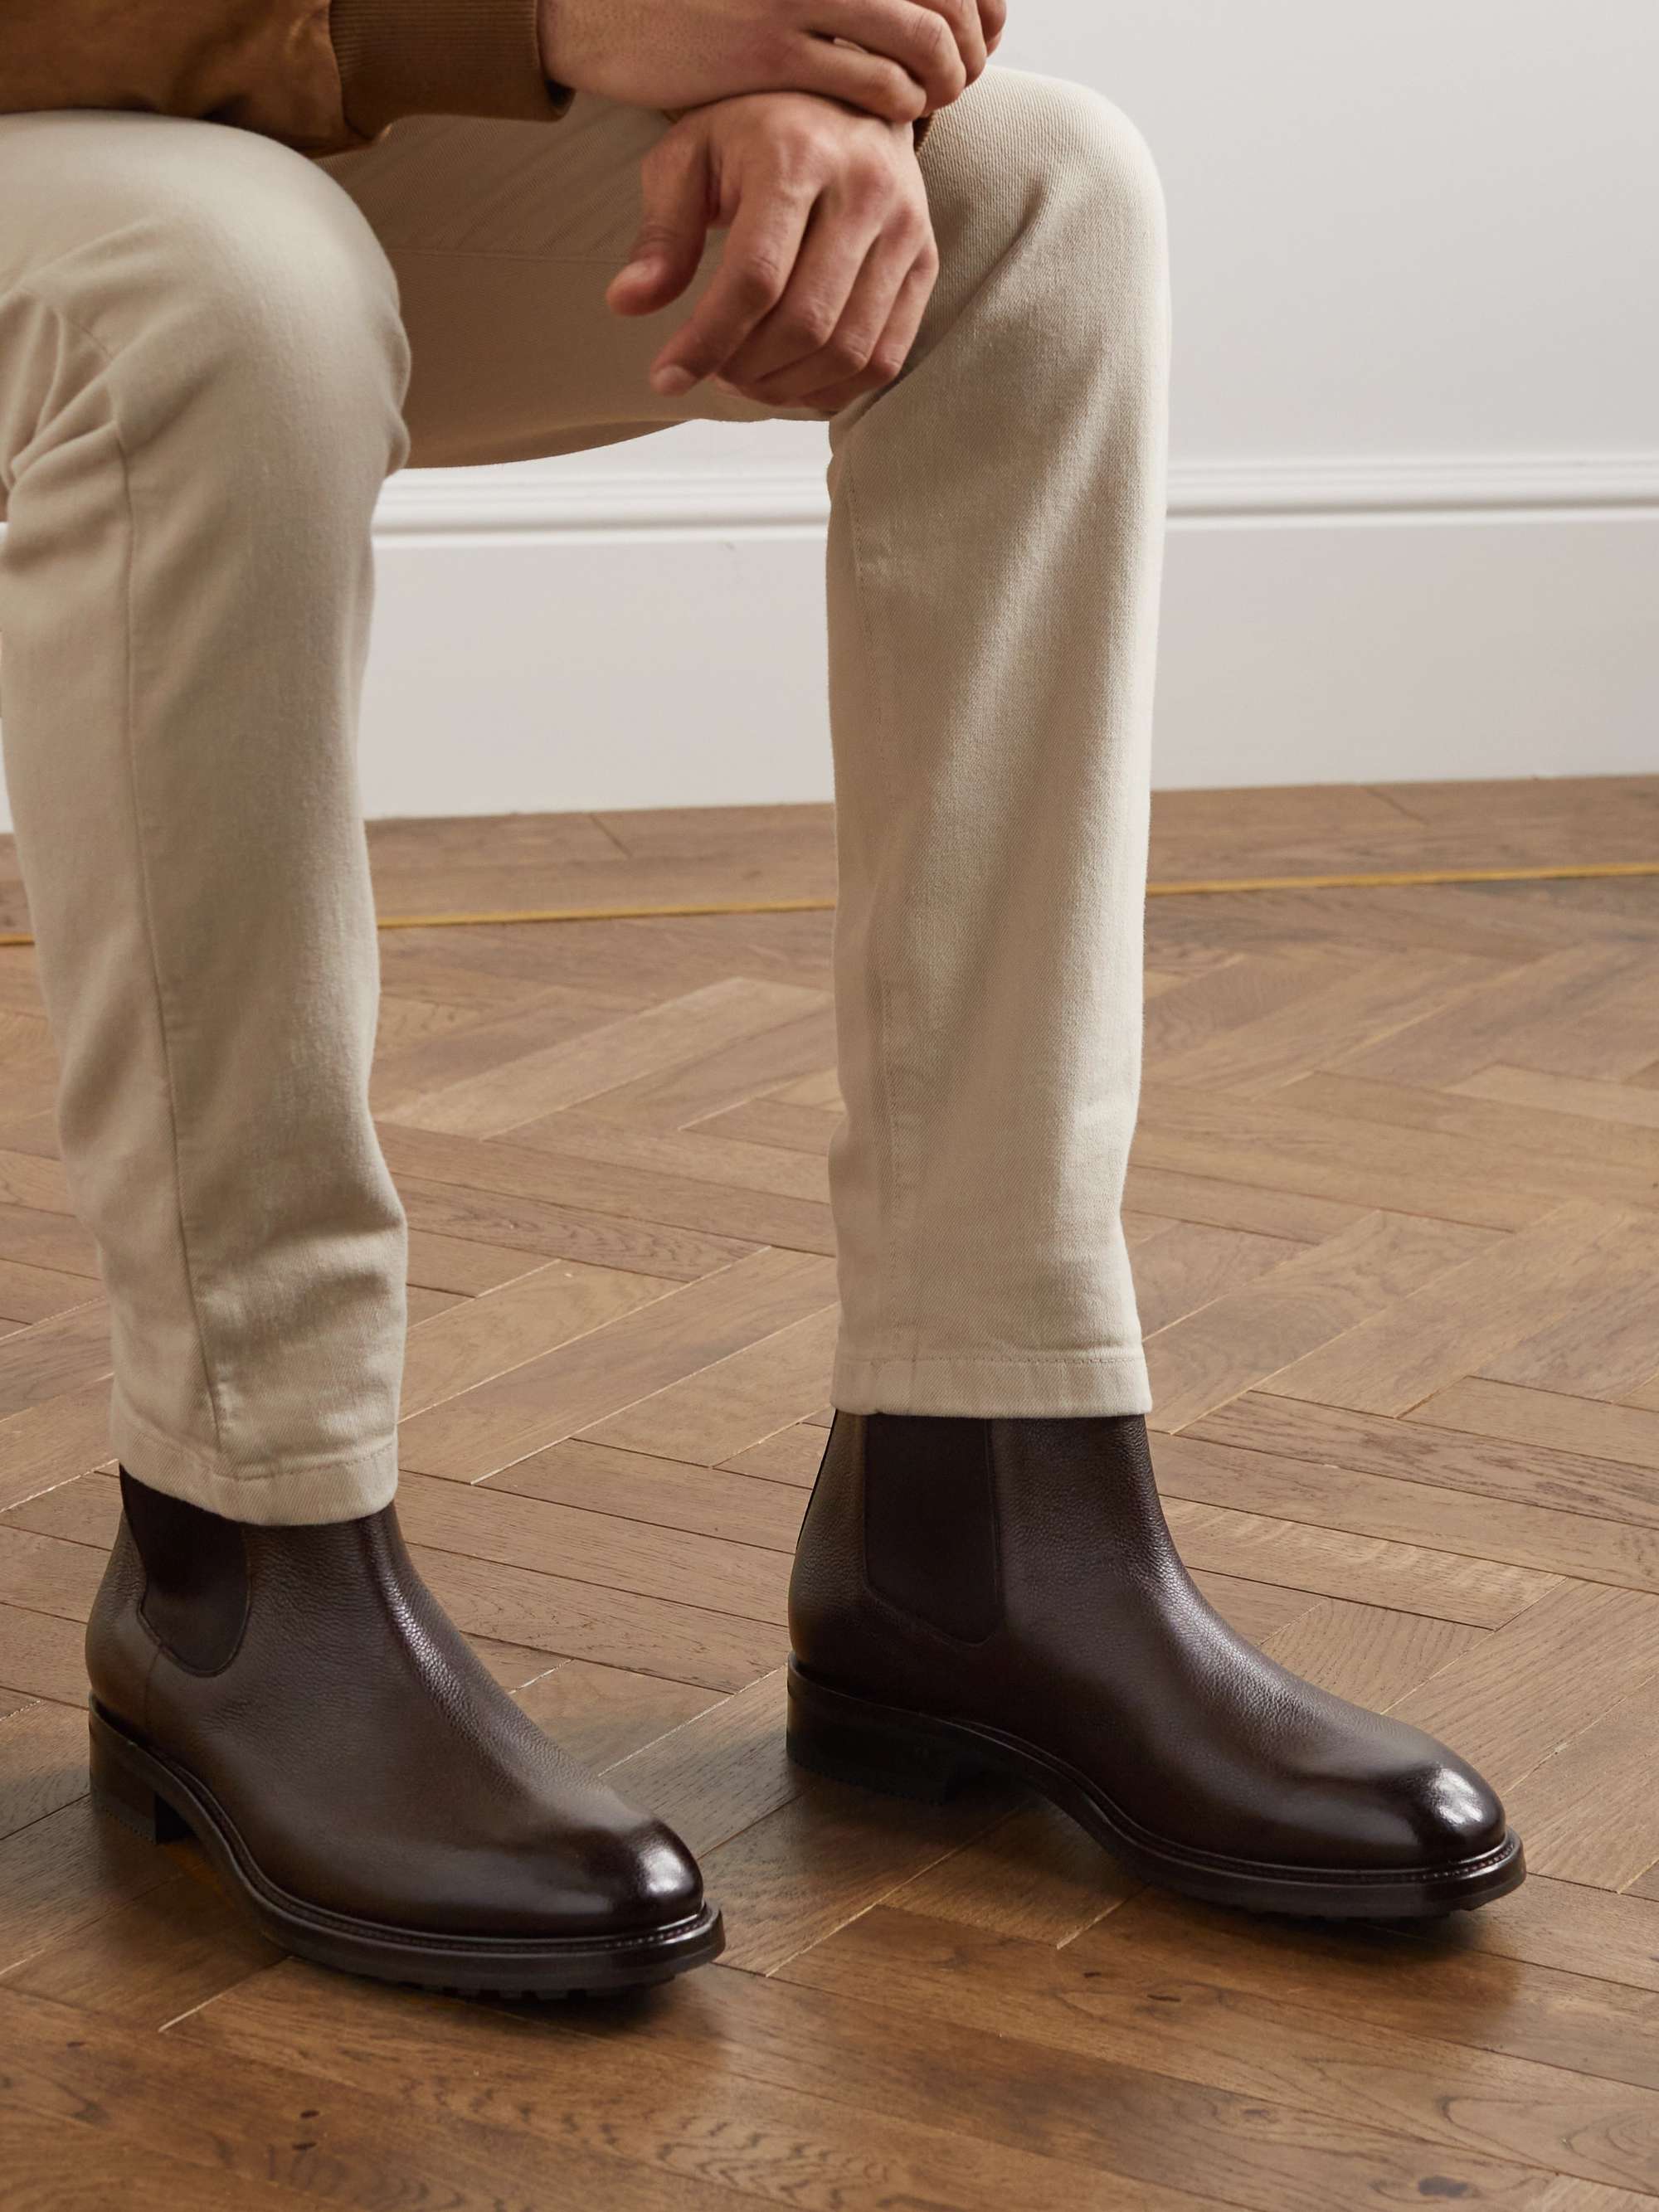 TOM FORD Stuart Full-Grain Leather Chelsea Boots for Men | MR PORTER